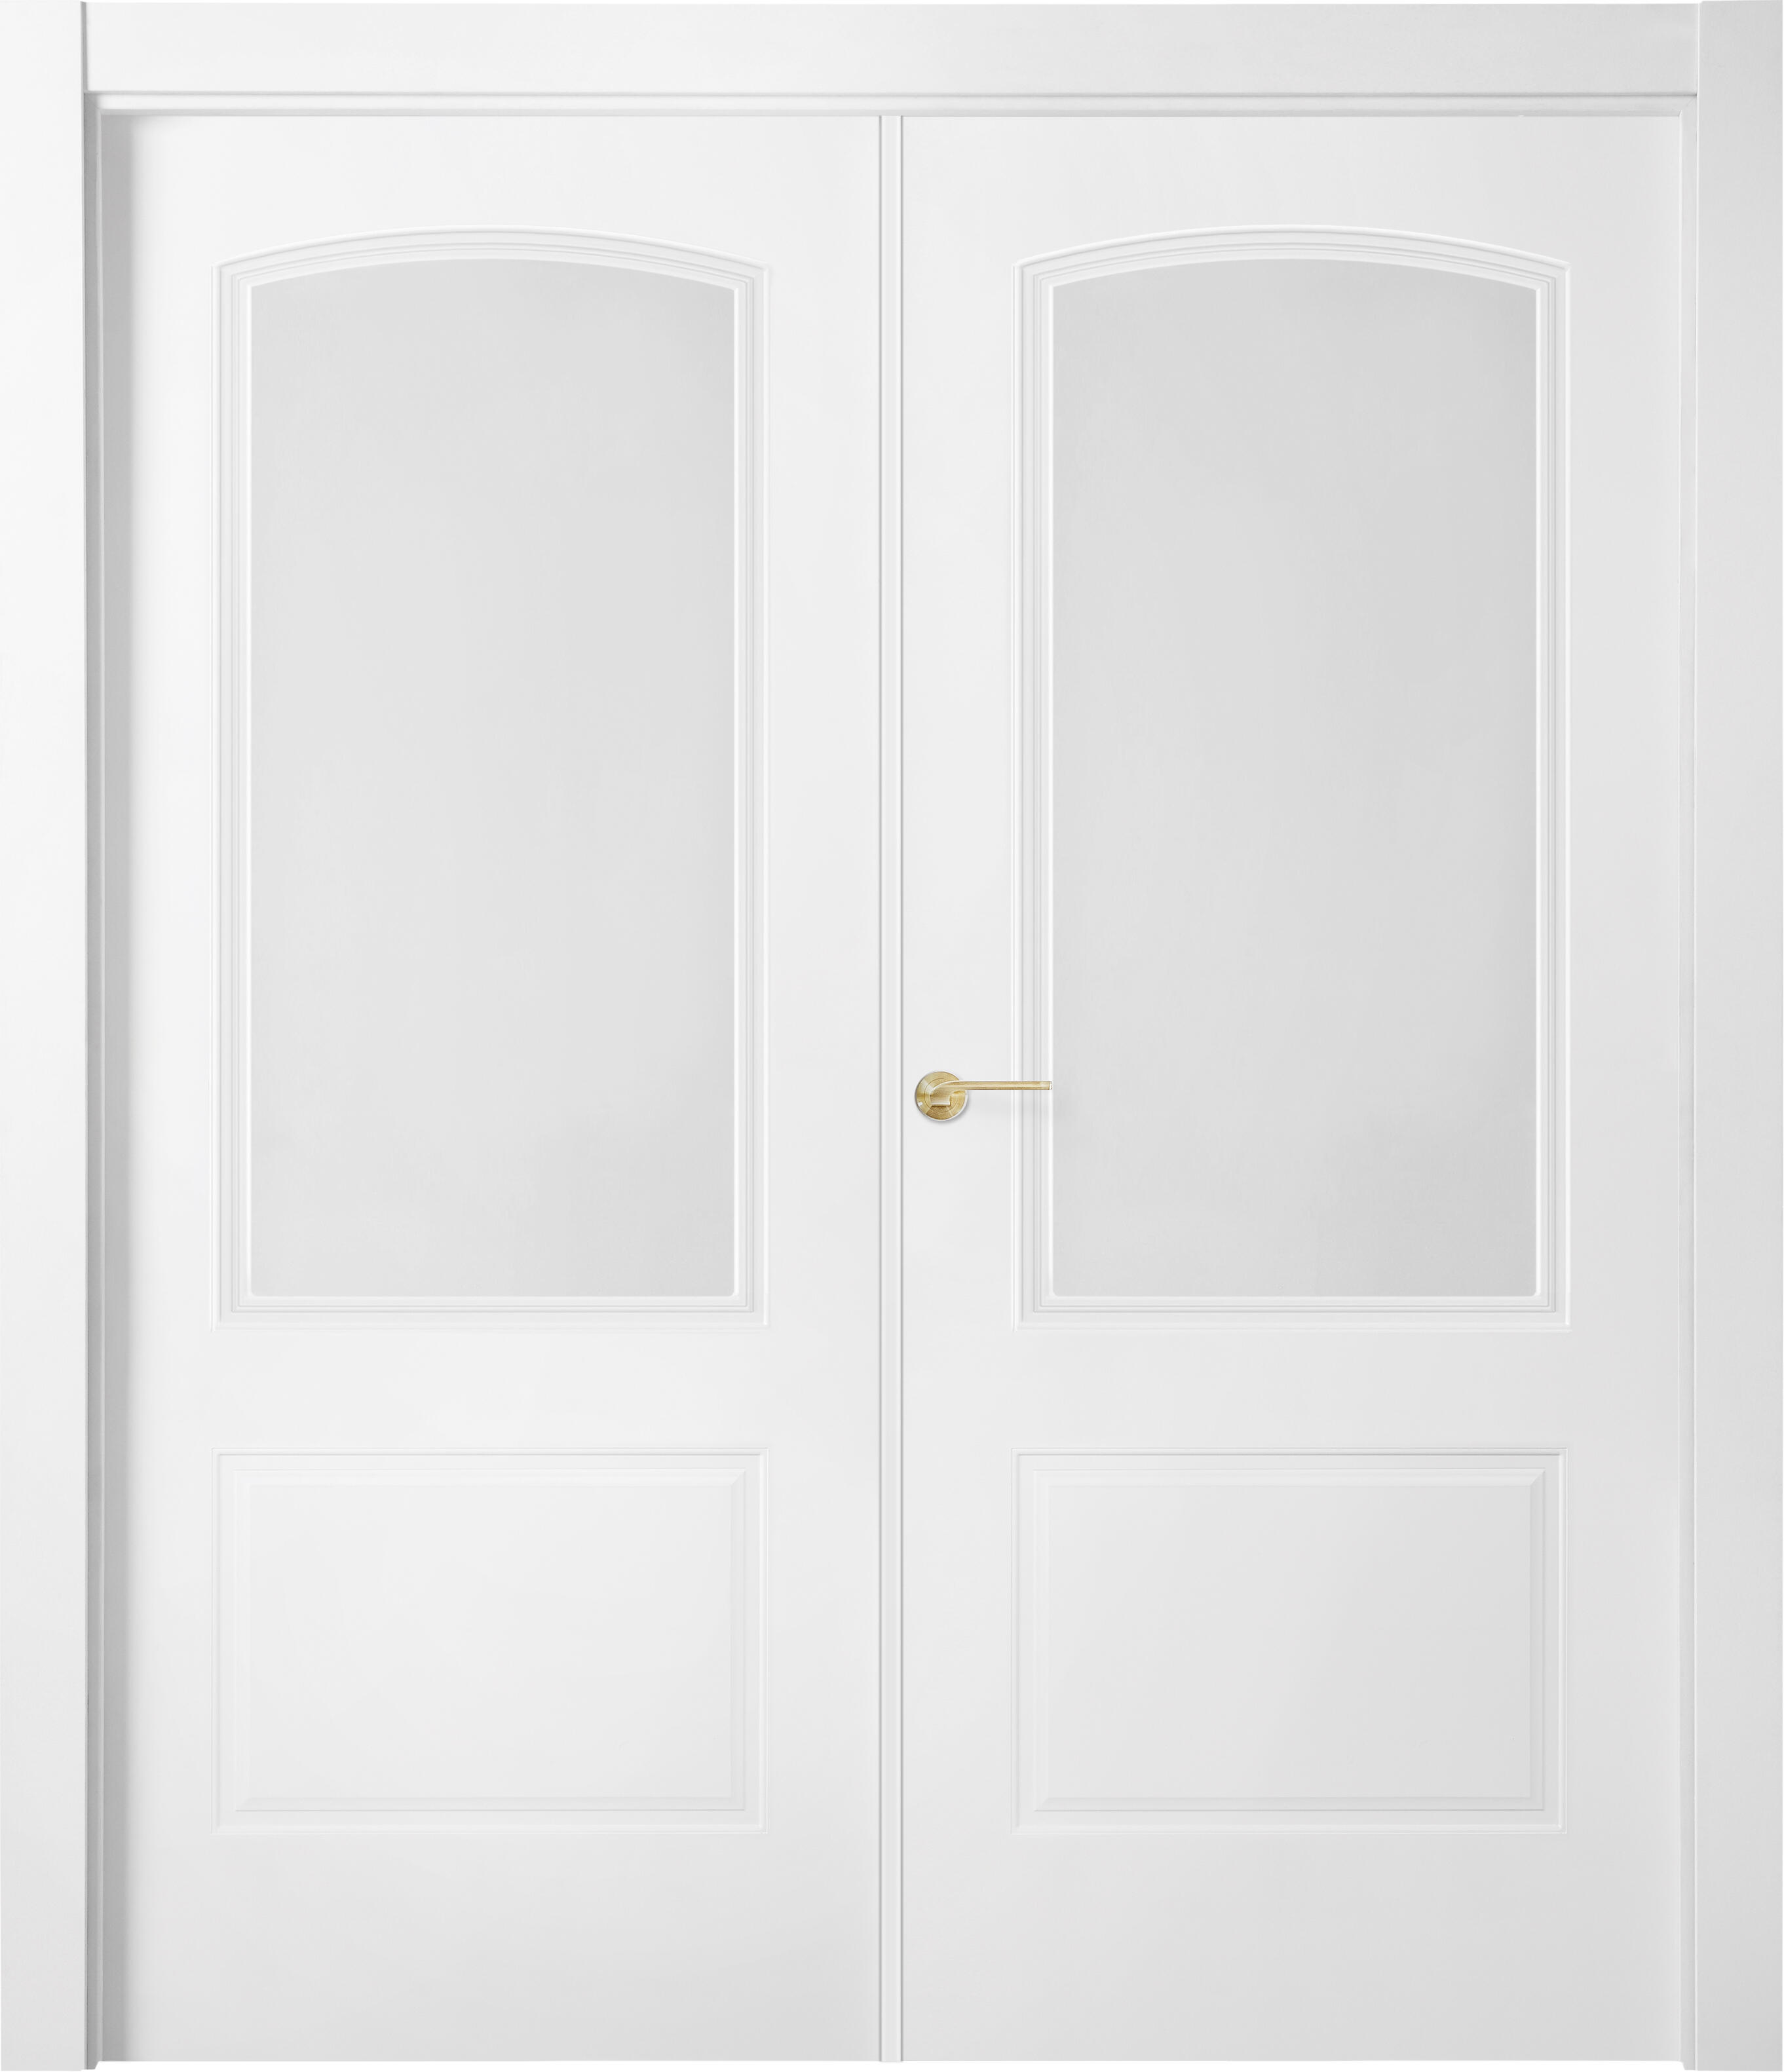 Puerta abatible berlin blanca line plus con cristal blanco izquierda de 125